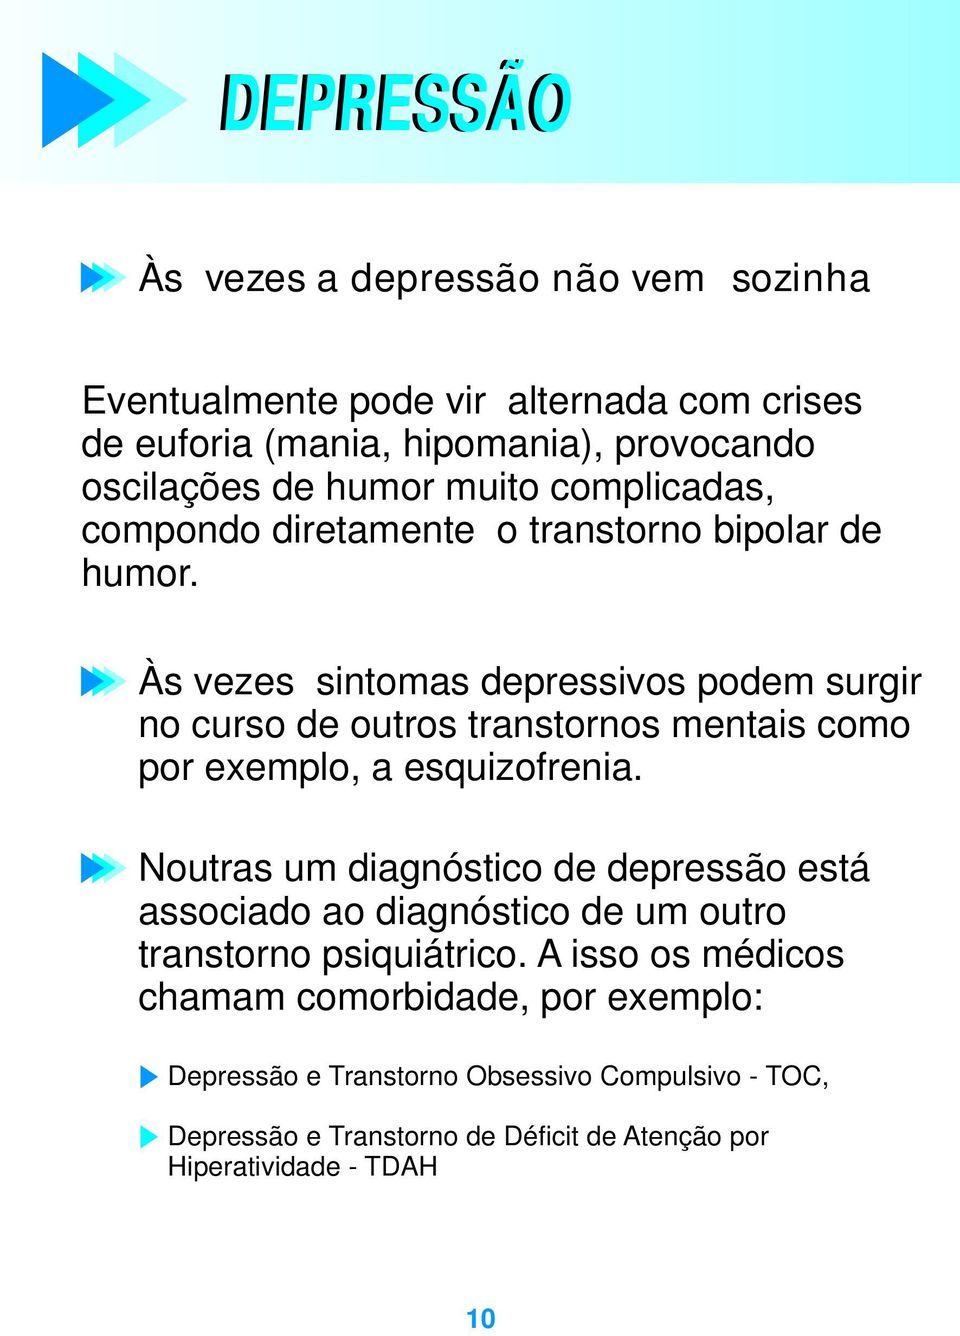 Às vezes sintomas depressivos podem surgir no curso de outros transtornos mentais como por exemplo, a esquizofrenia.